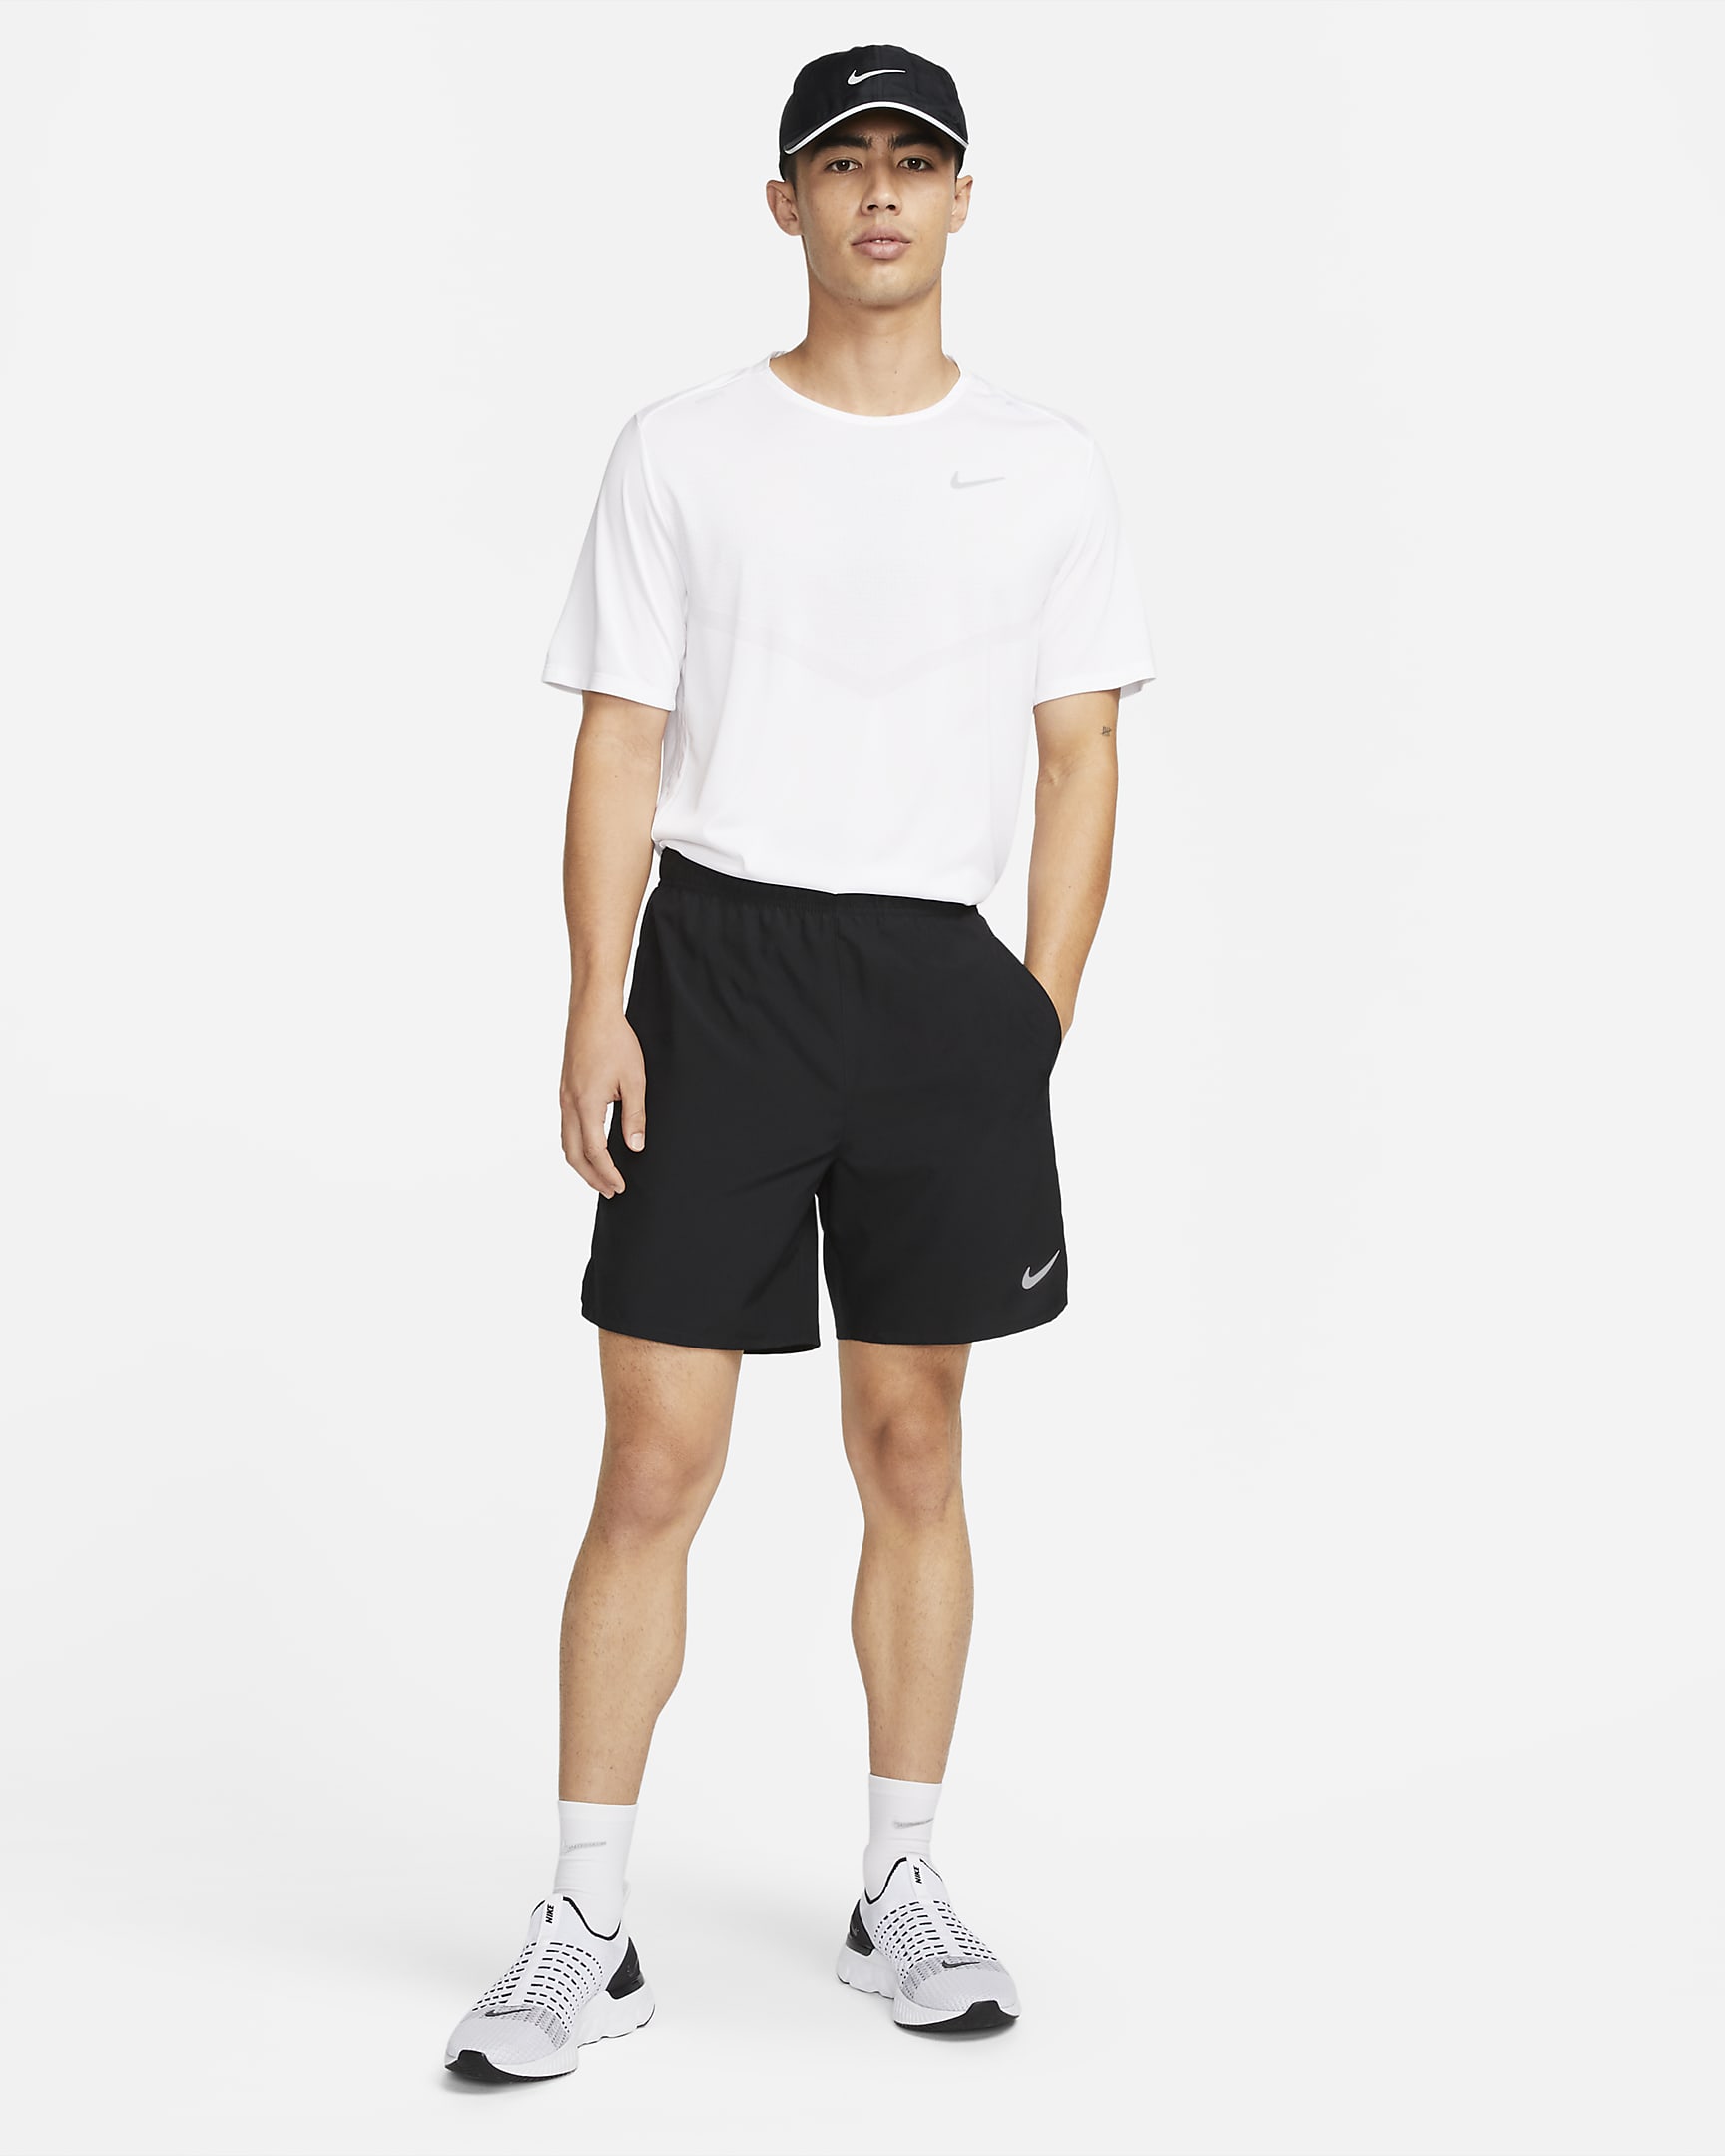 Nike Dri-FIT Challenger Men's 18cm (approx.) Unlined Versatile Shorts - Black/Black/Black